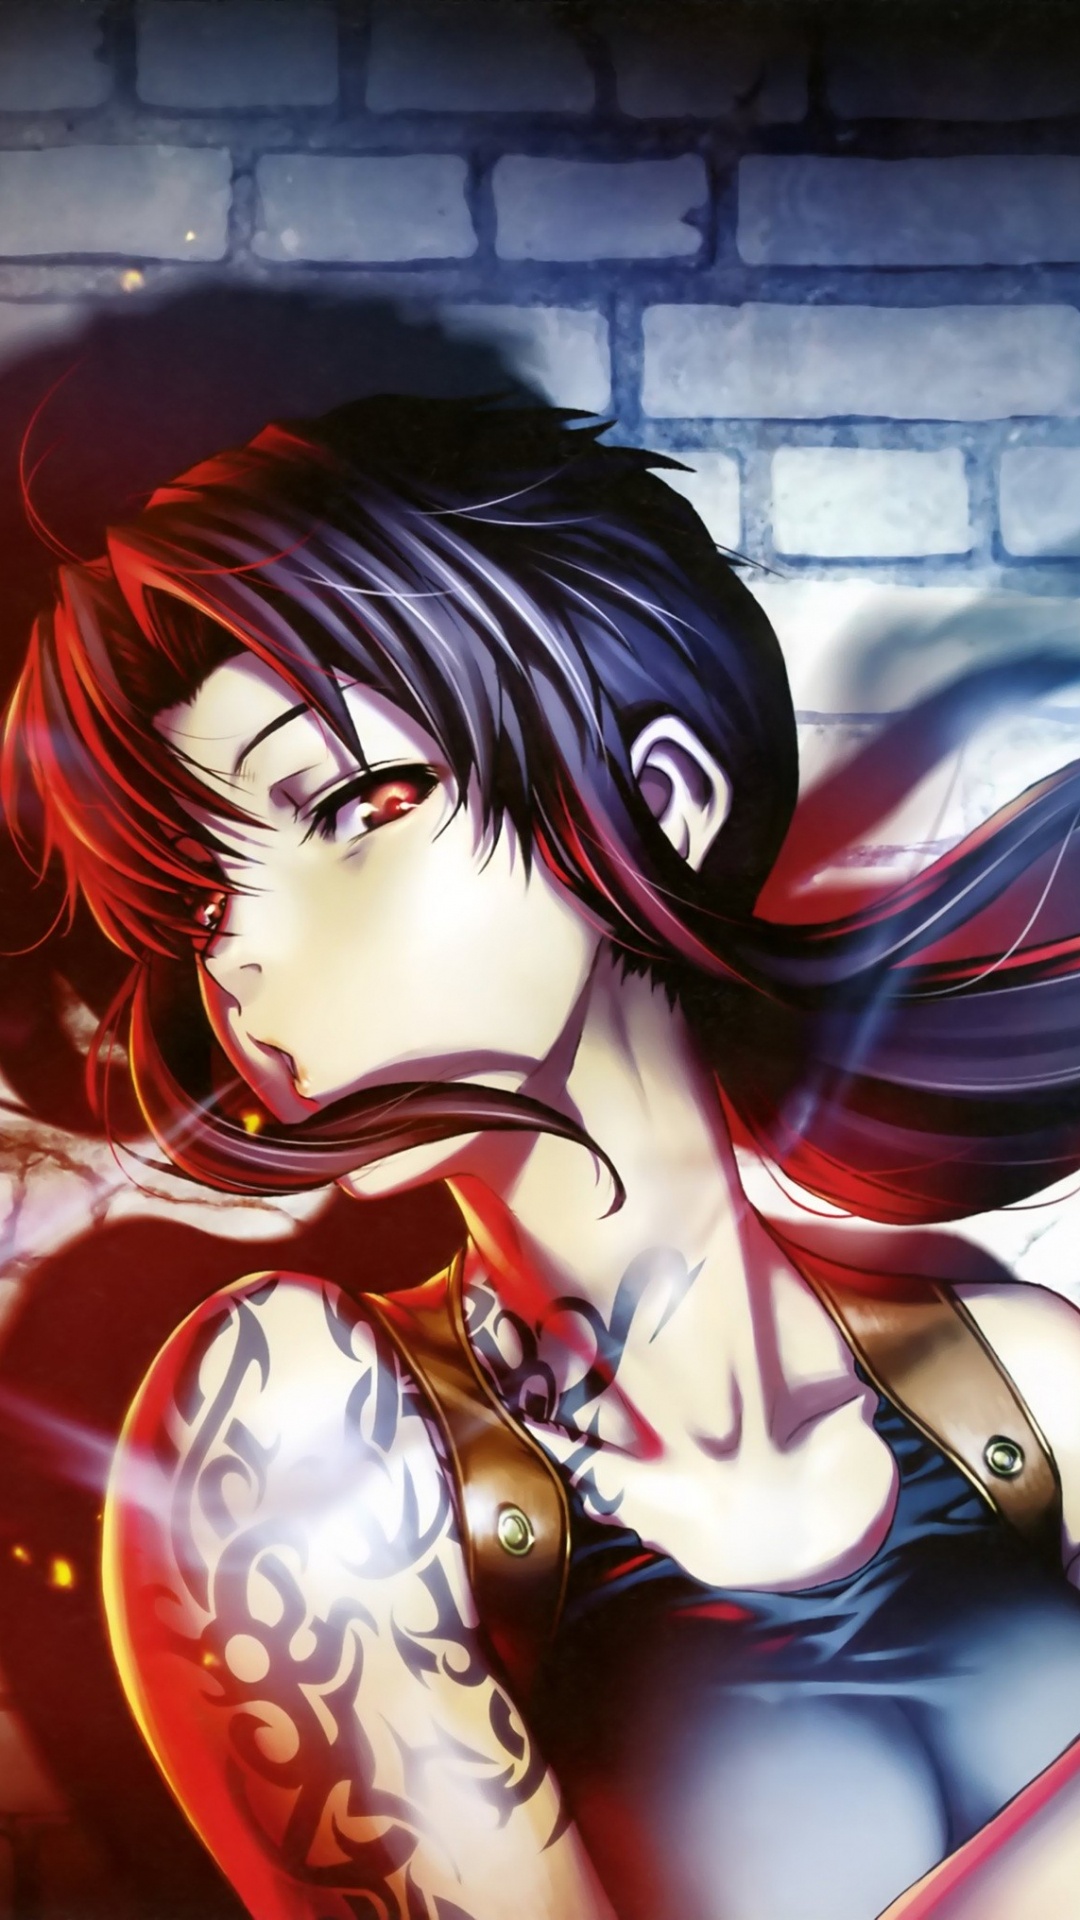 Mujer en Personaje de Anime de Pelo Rojo. Wallpaper in 1080x1920 Resolution